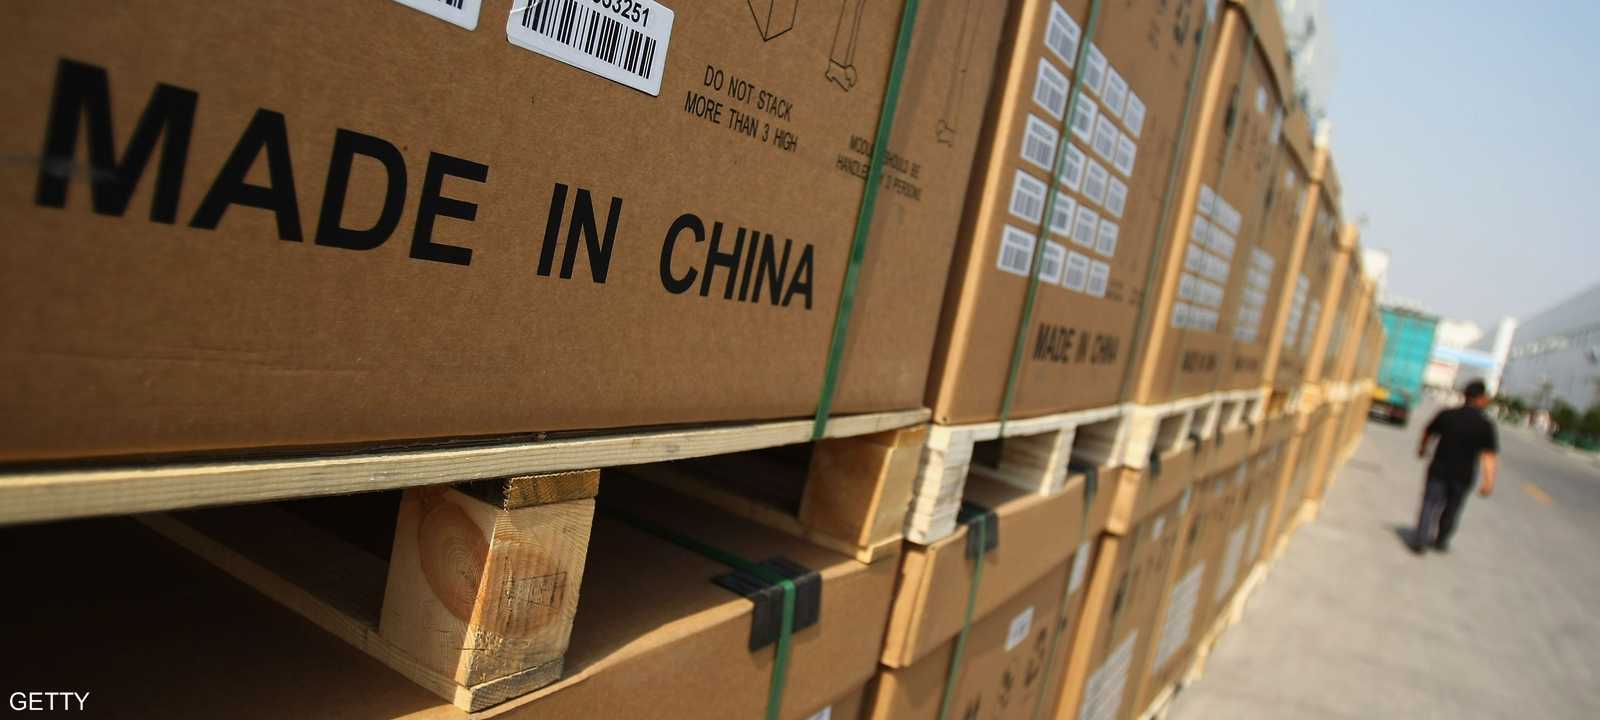 سجلت الصين فائضا تجاريا مع الولايات المتحدة